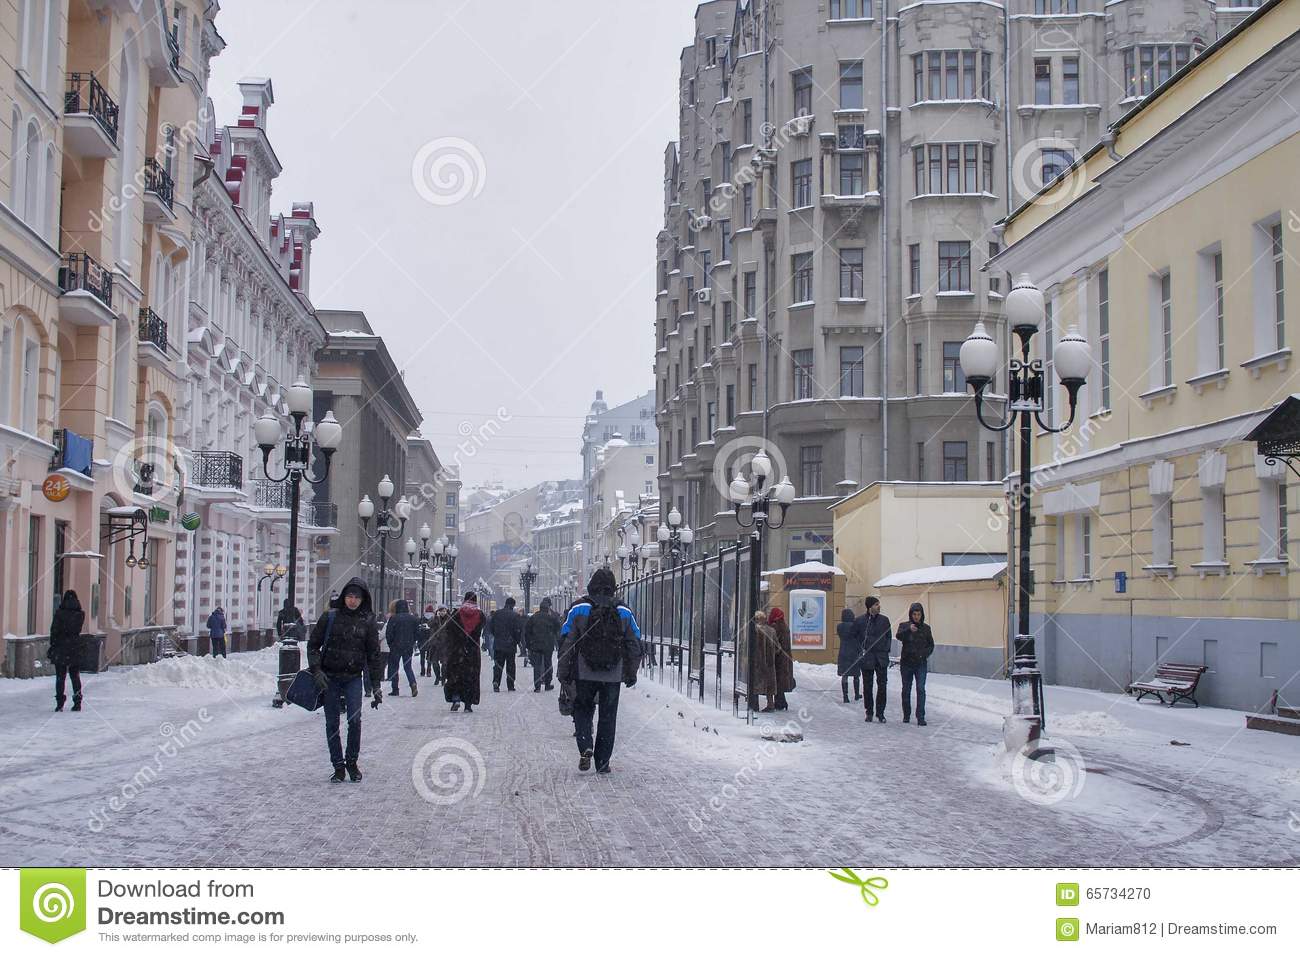 Справка о загрязнении воздуха и метеорологических условиях в г. Москве по состоянию на 09:00 29.01.2018 года - фото 1